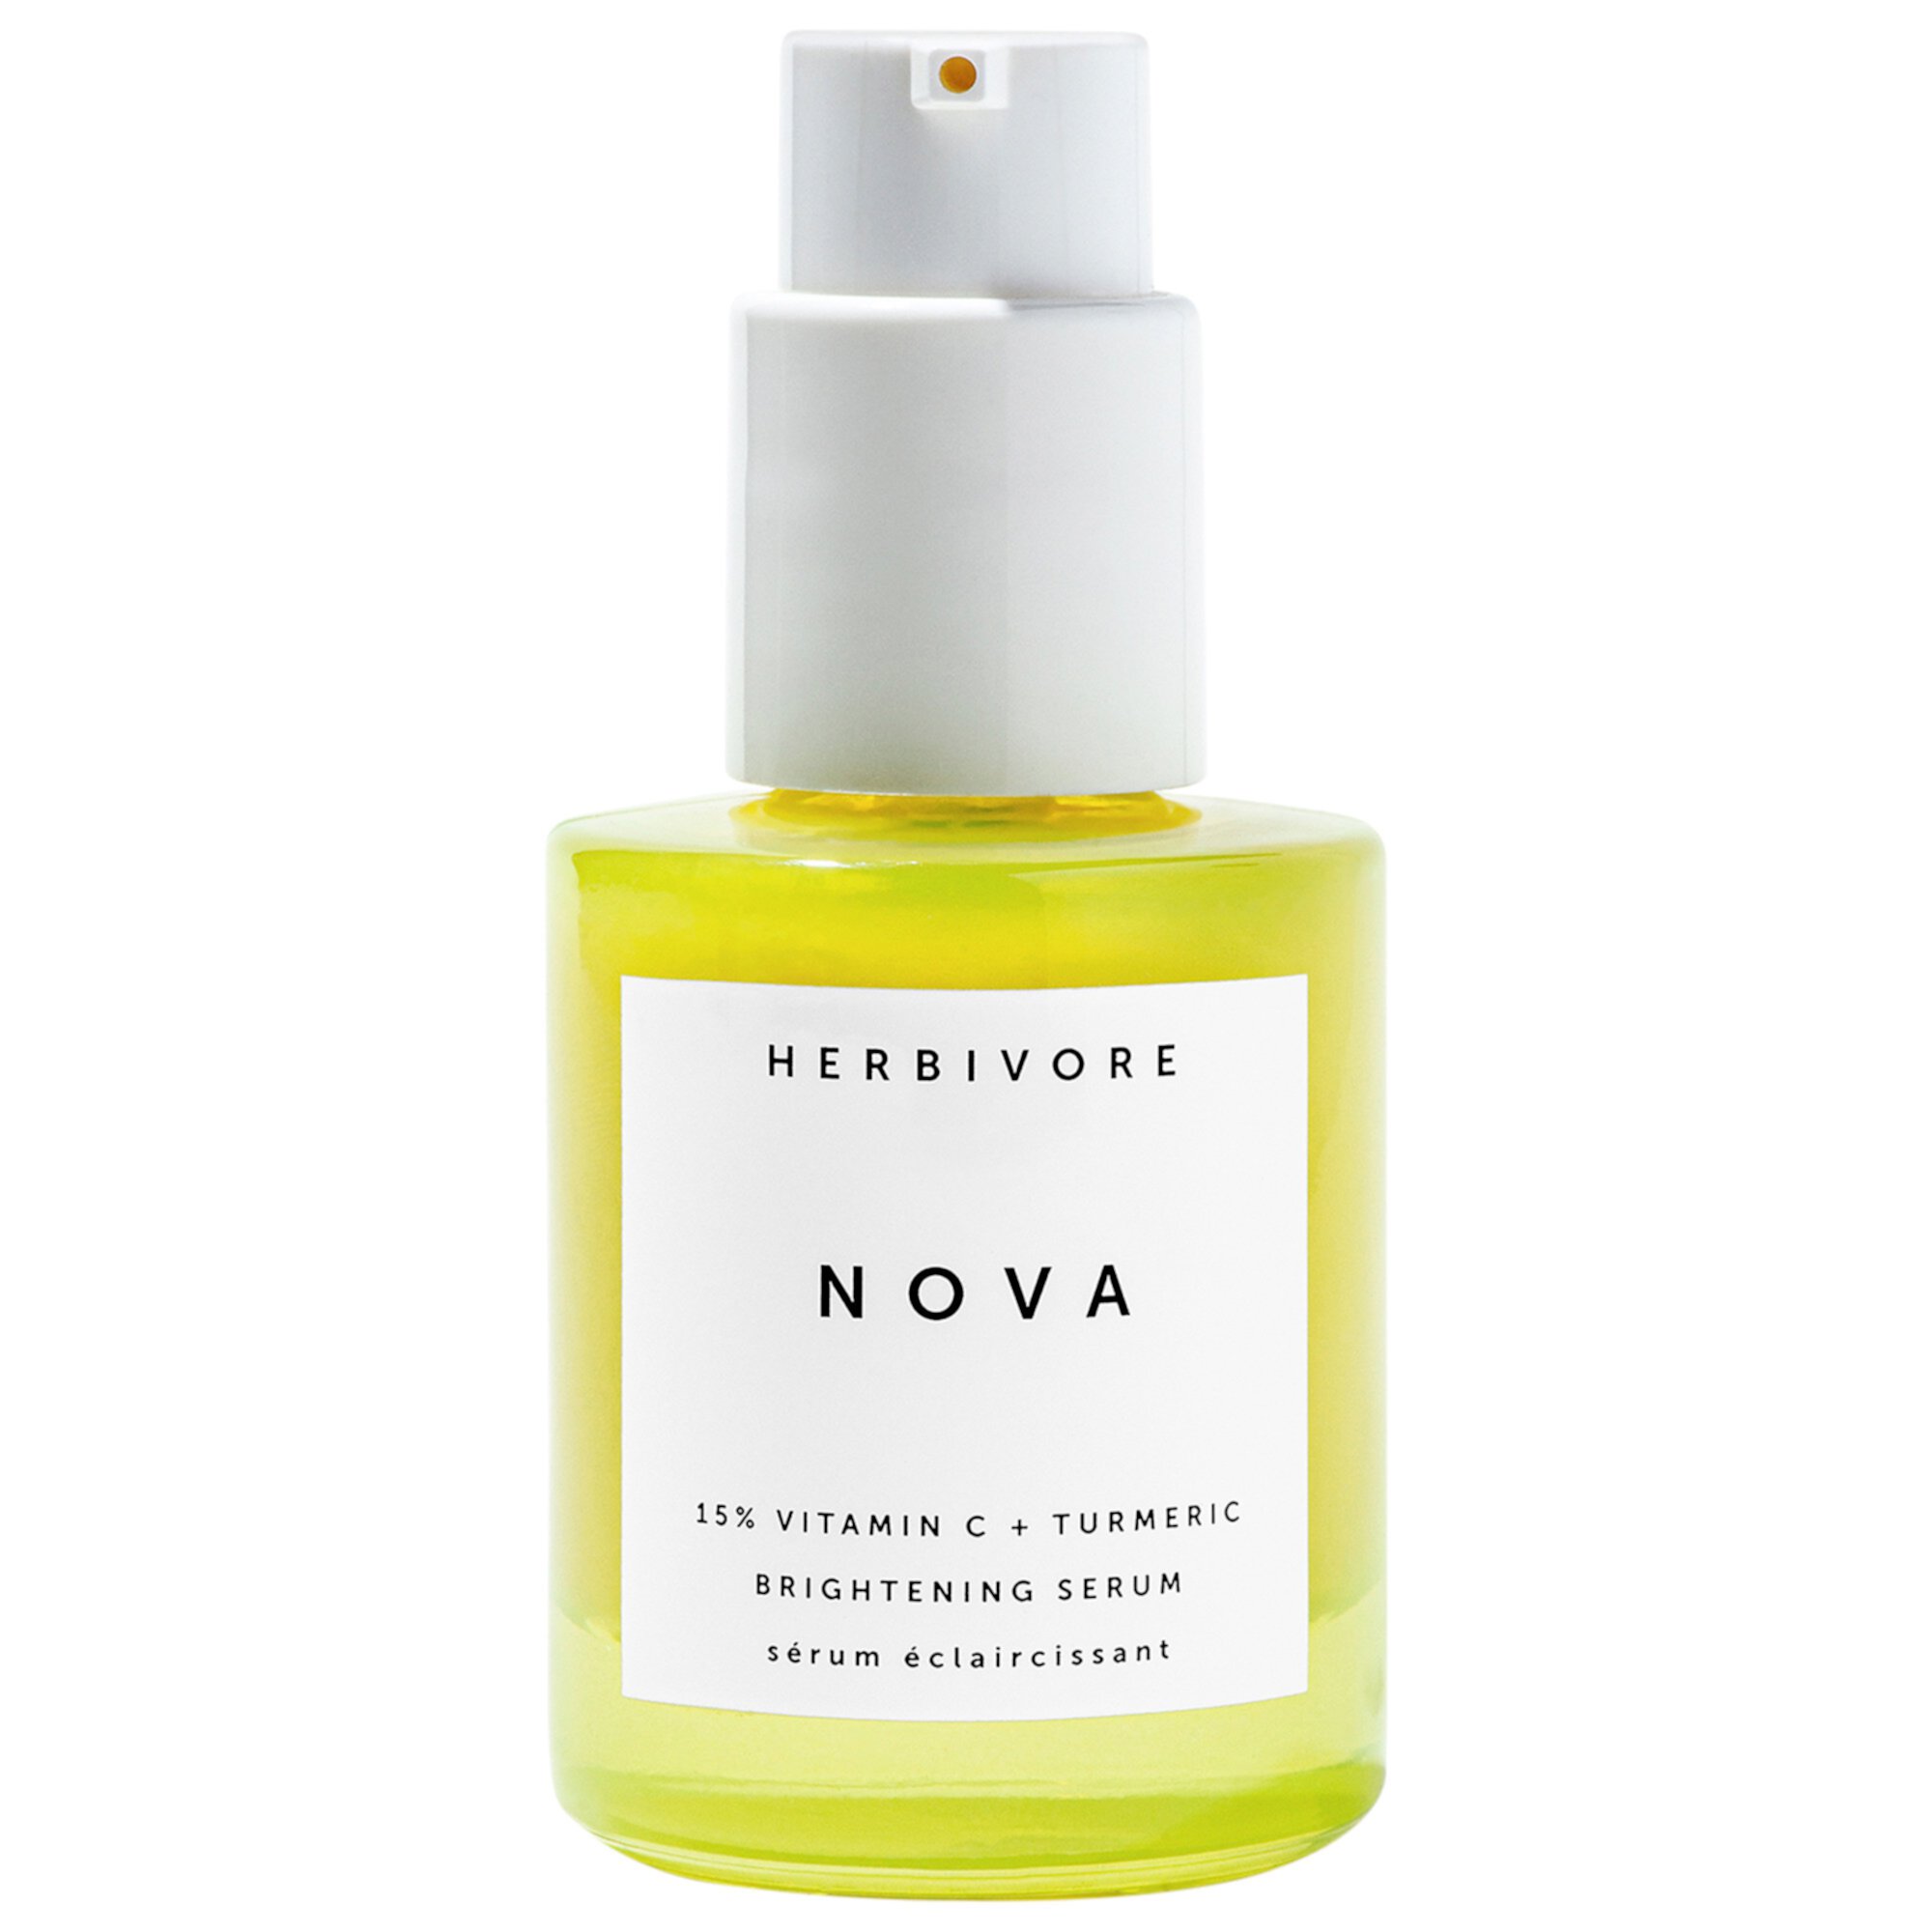 Nova 15% витамин С + куркума осветляющая сыворотка Herbivore